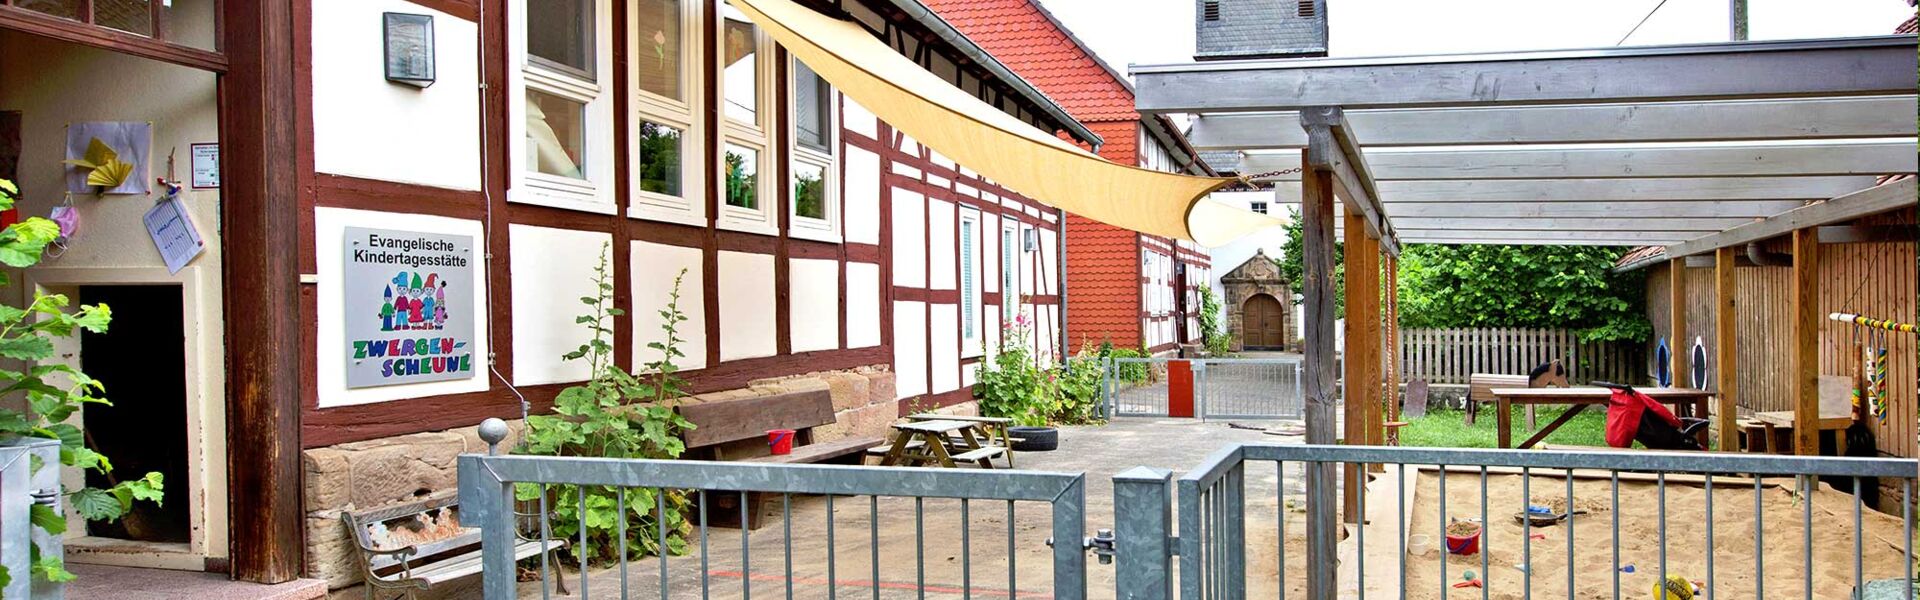 Aussenansicht der Ev. Kindertagesstätte Bad Arolsen - Schmillinghausen